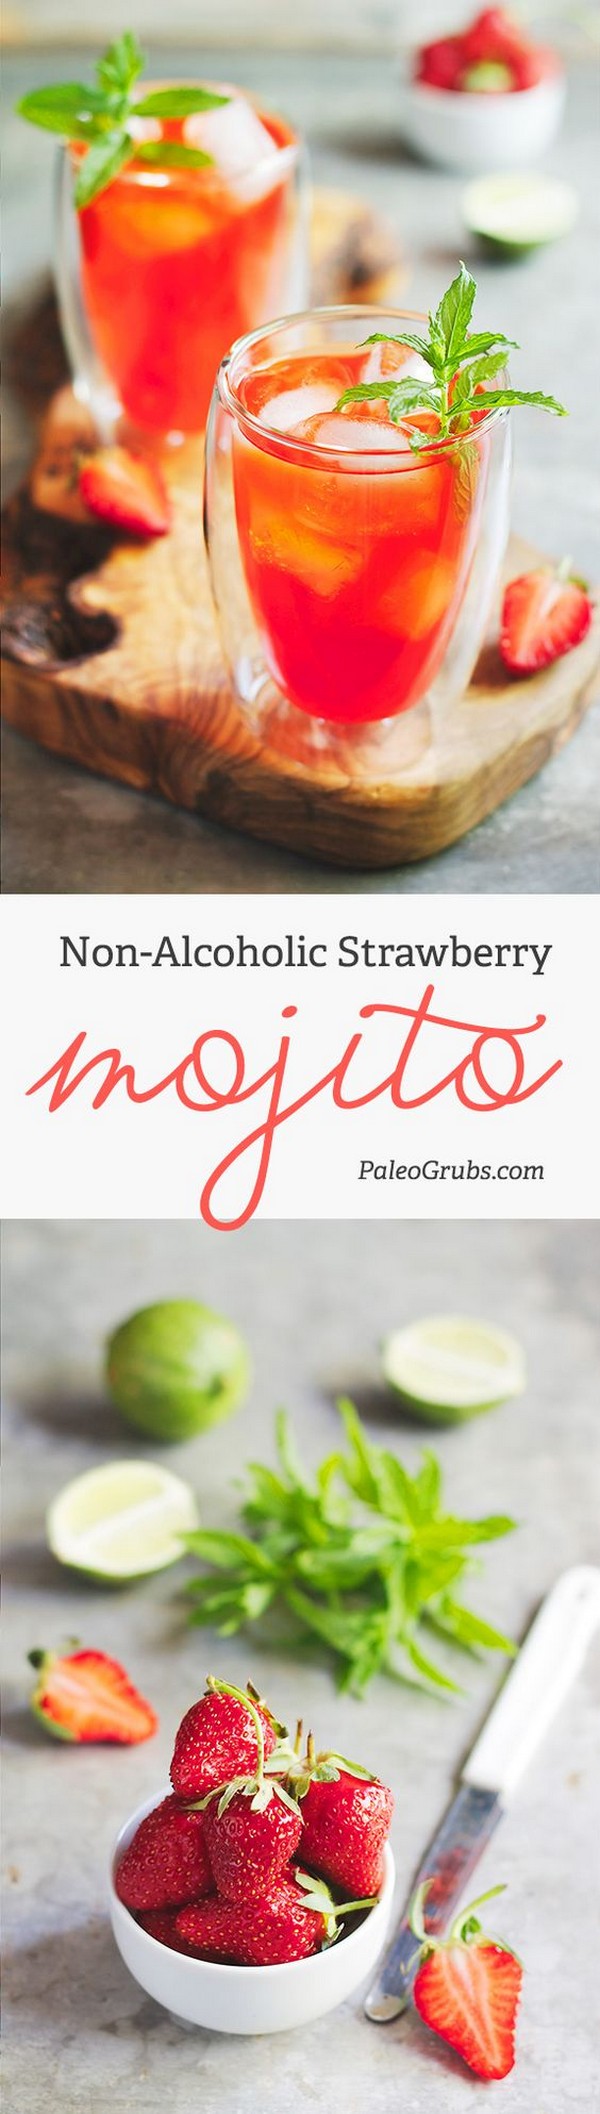 Non-Alcoholic Paleo Strawberry Mojito